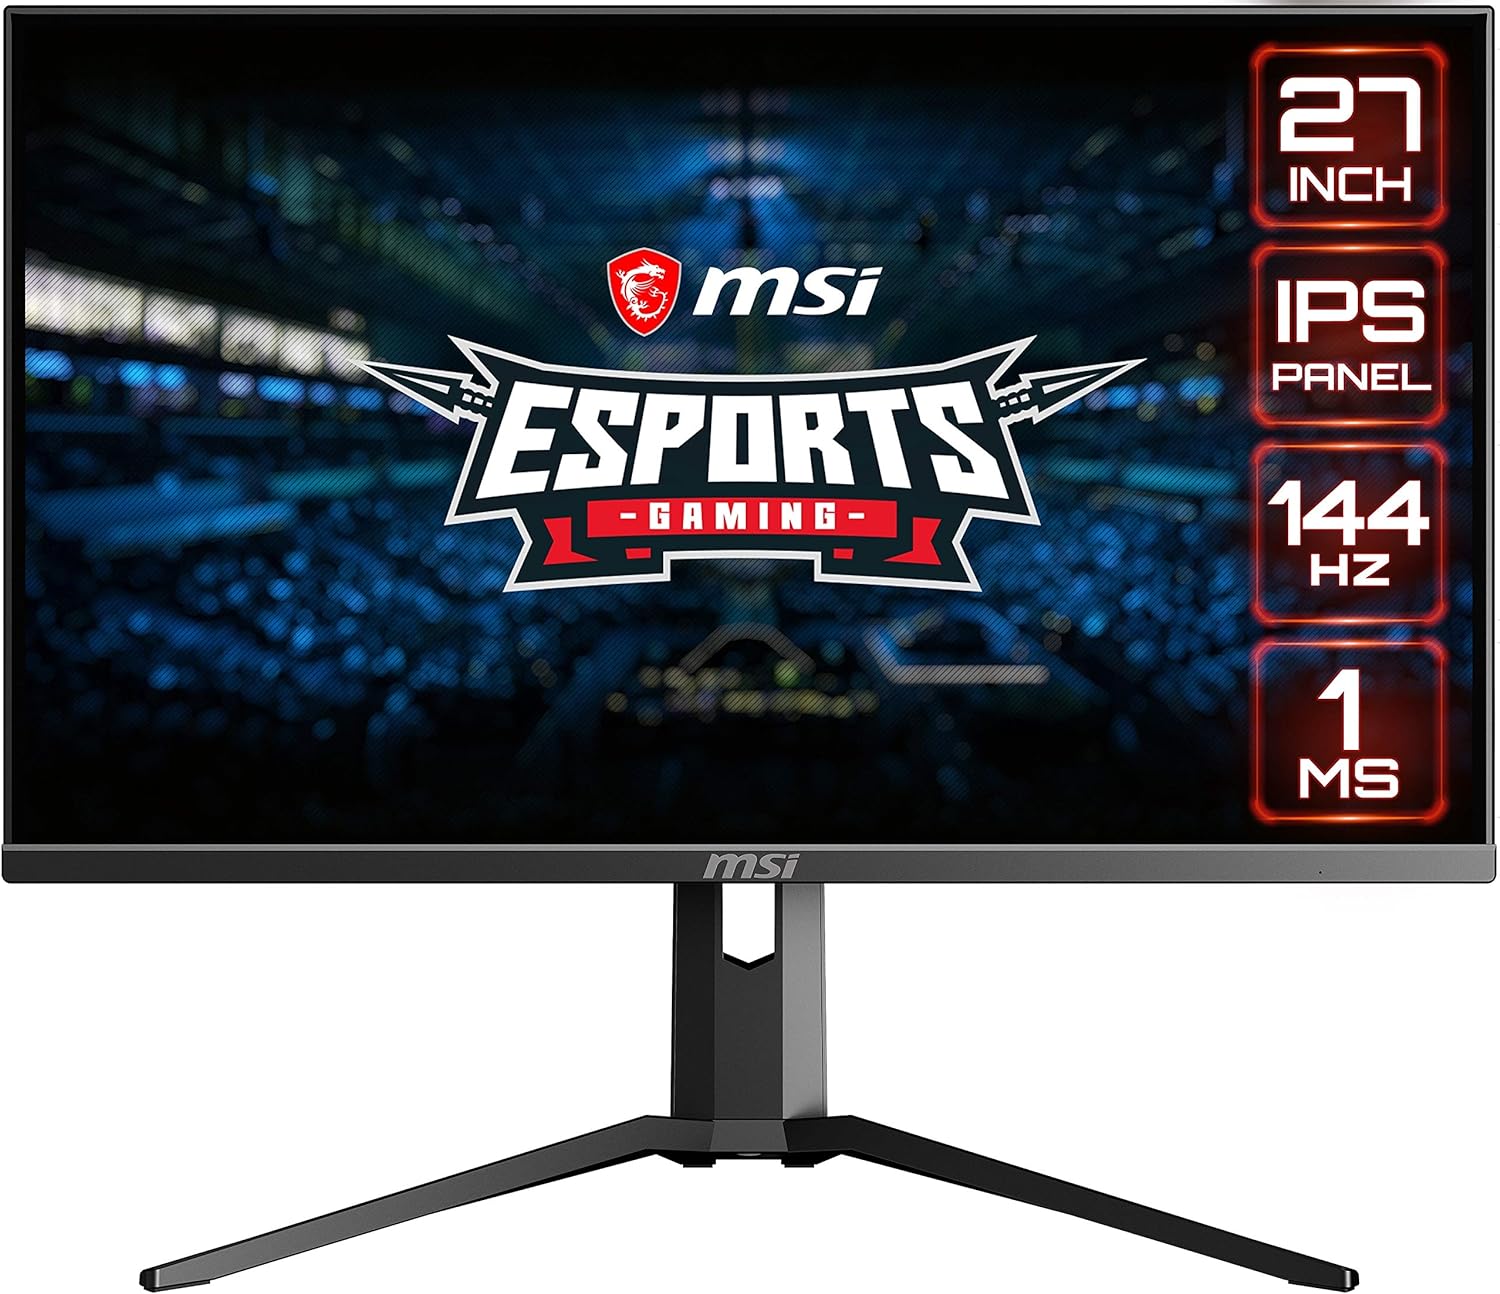 MSI Optix MAG273R 27” IPS Gaming Monitor - Full HD, 144Hz, 1ms, RGB - Black 0824142204221